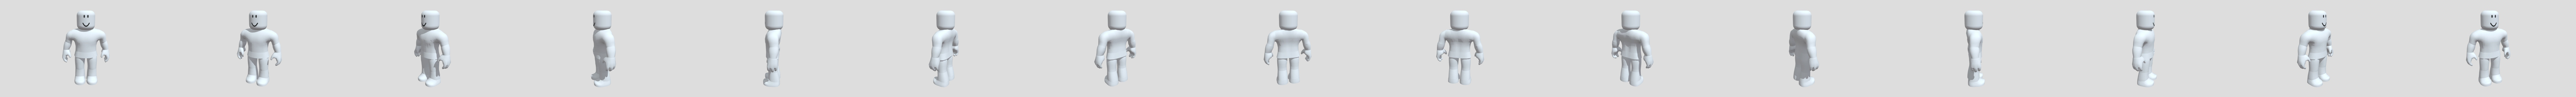 roblox-roblox-boy-avatar - 3D model by smith.family11723 [9c4444f] -  Sketchfab